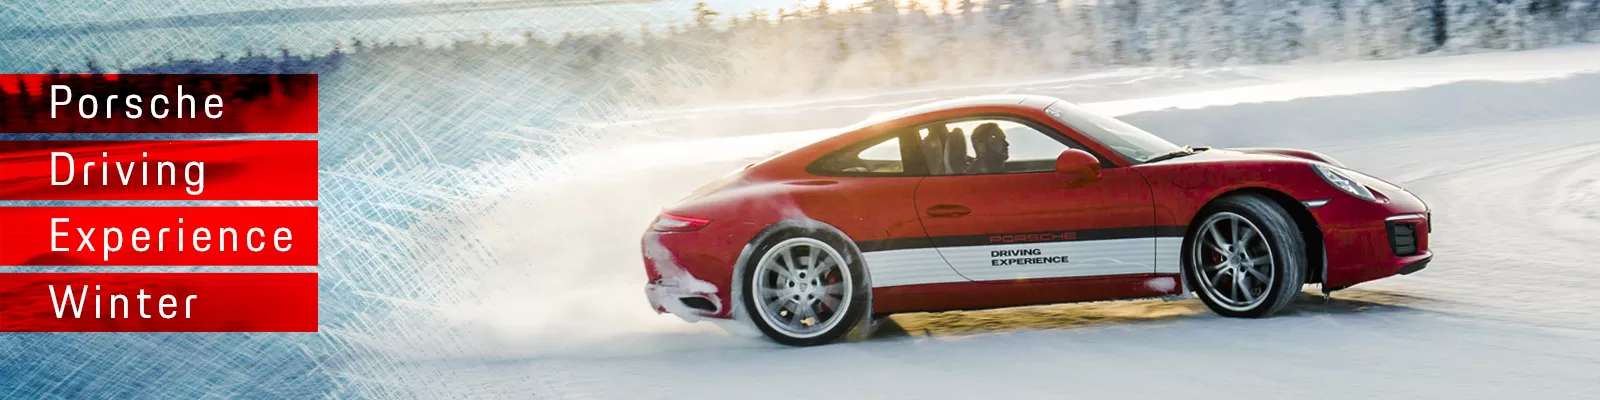 Porsche Driving Experience Winter 2018